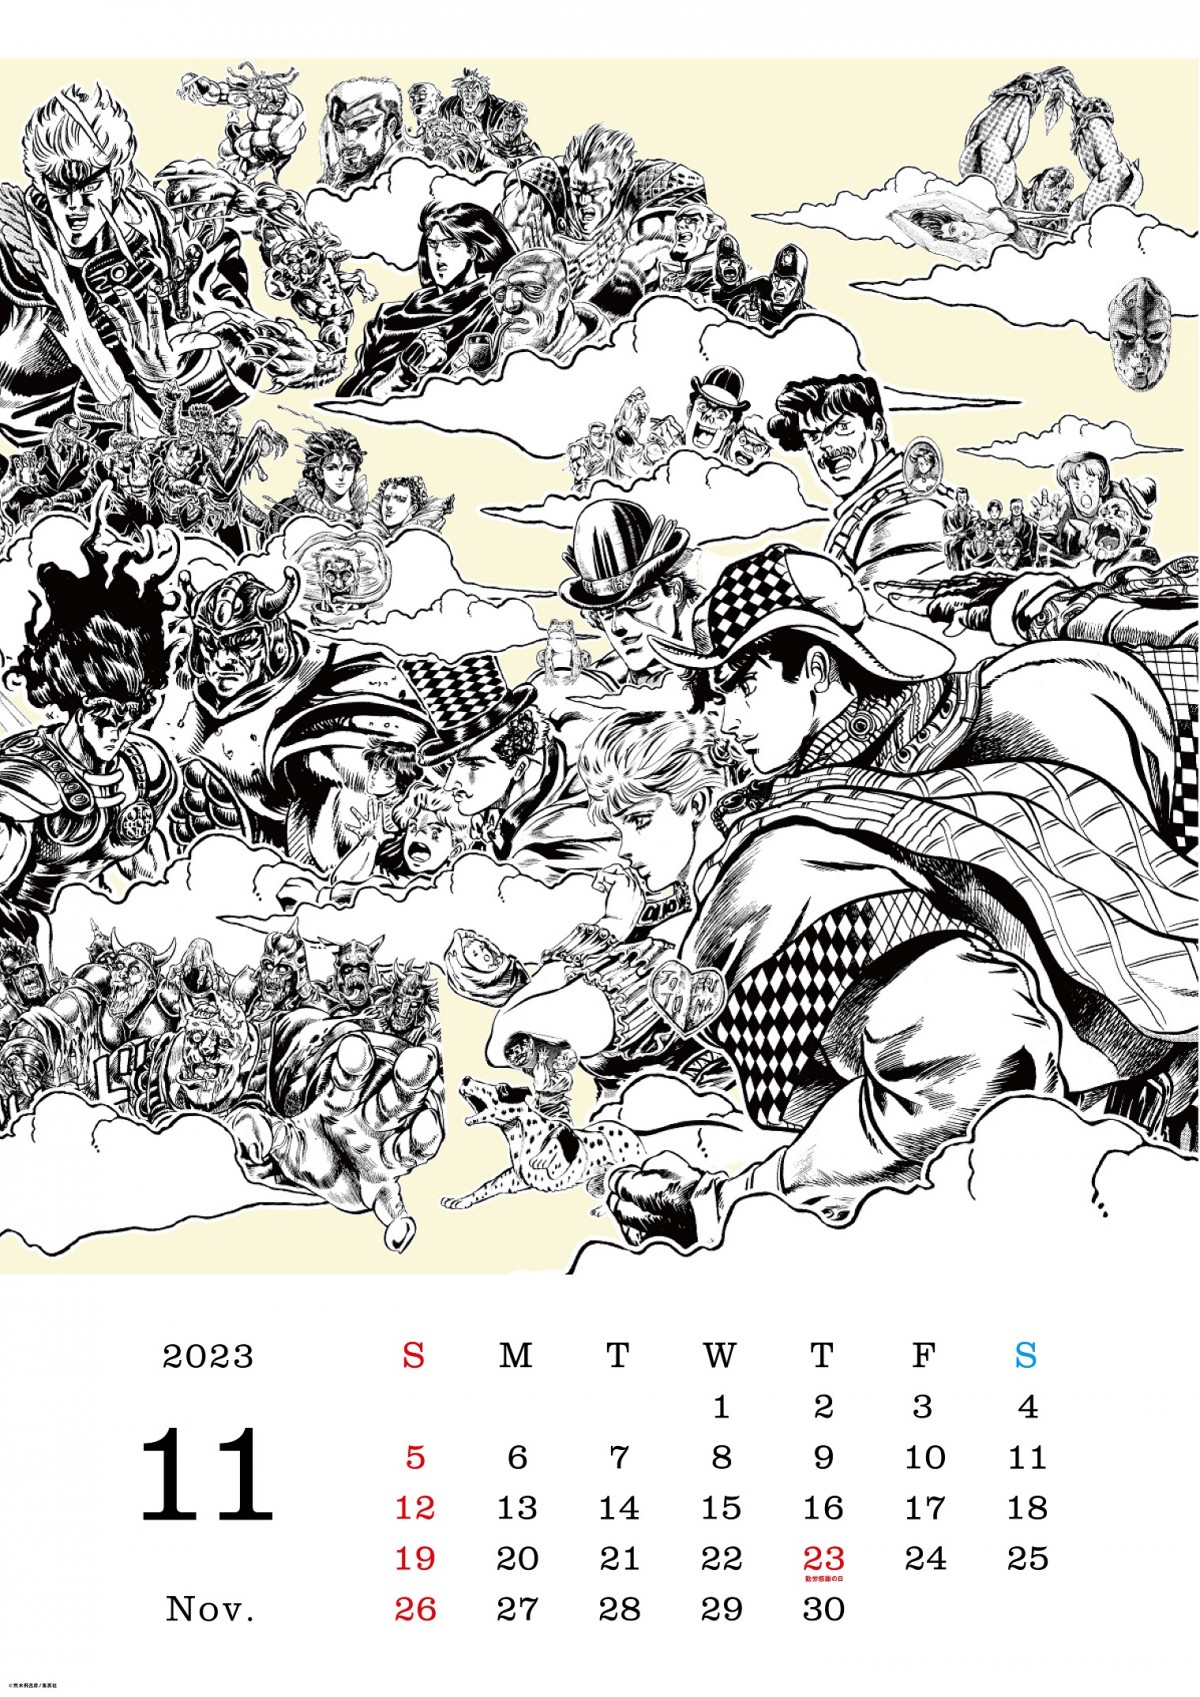 ジョジョ』第9部のコミックス第1巻発売 カレンダー企画も実施 | ORICON